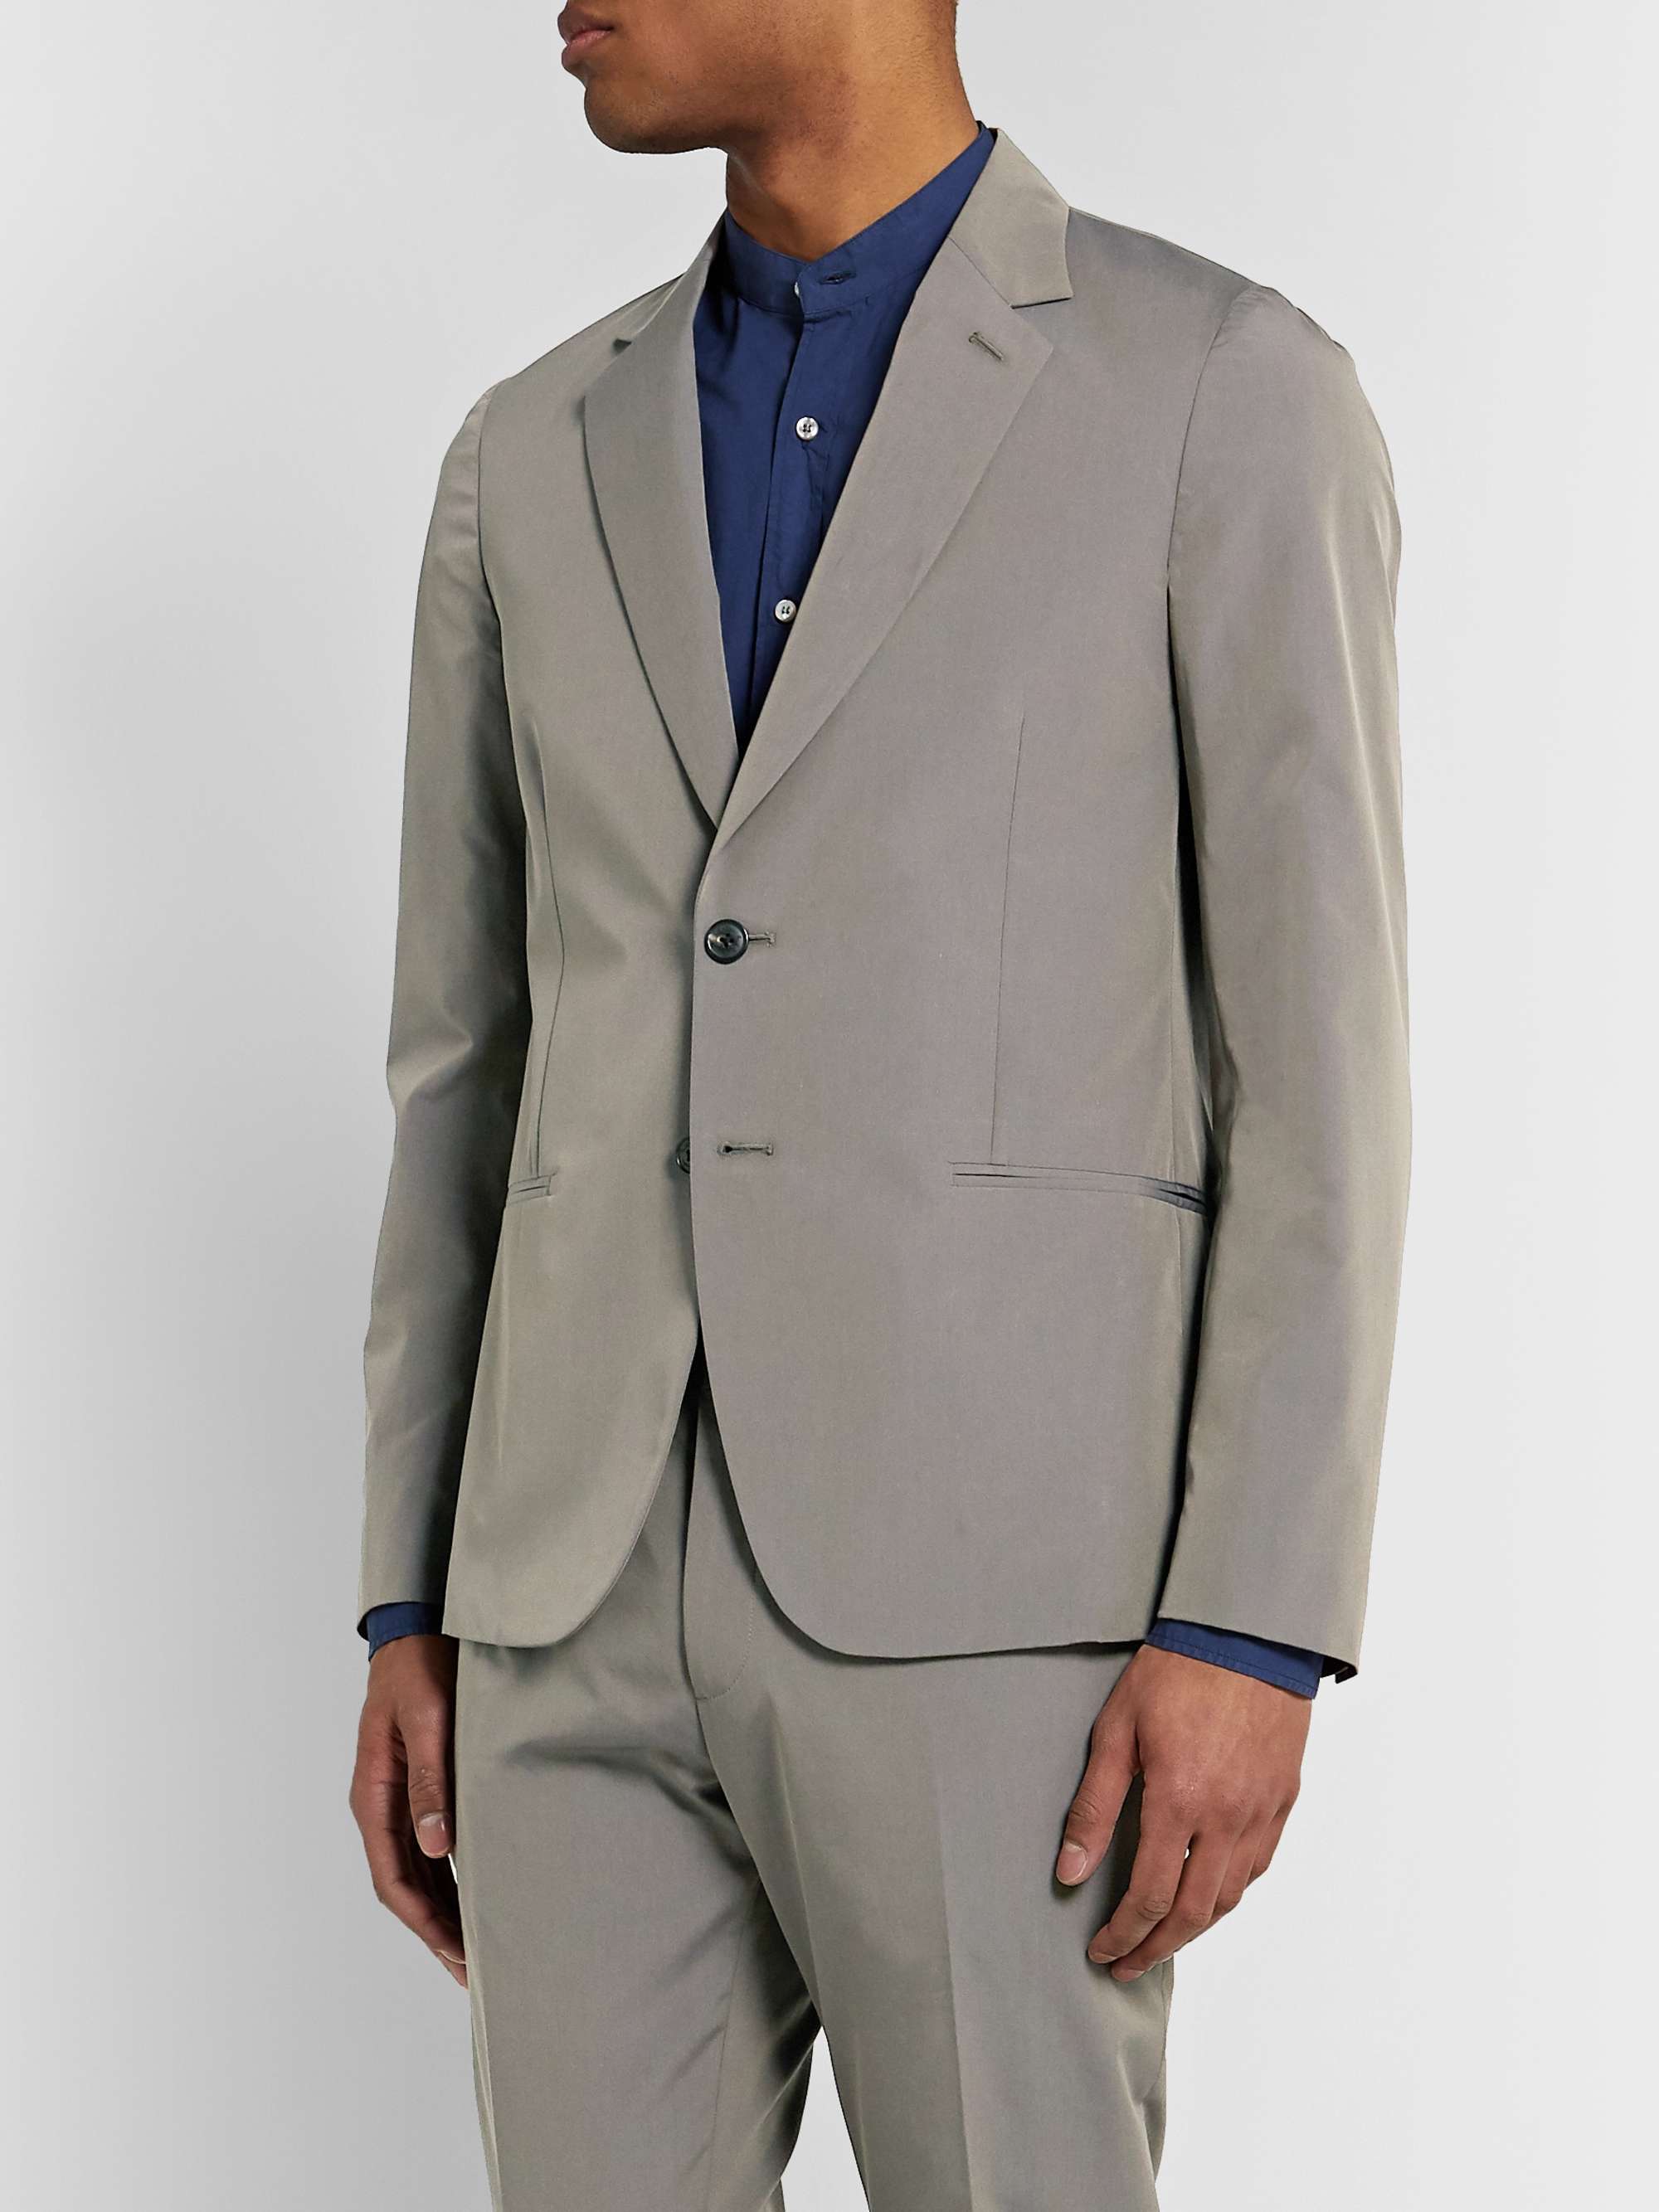 PAUL SMITH Soho Slim-Fit Cotton Suit Jacket for Men | MR PORTER